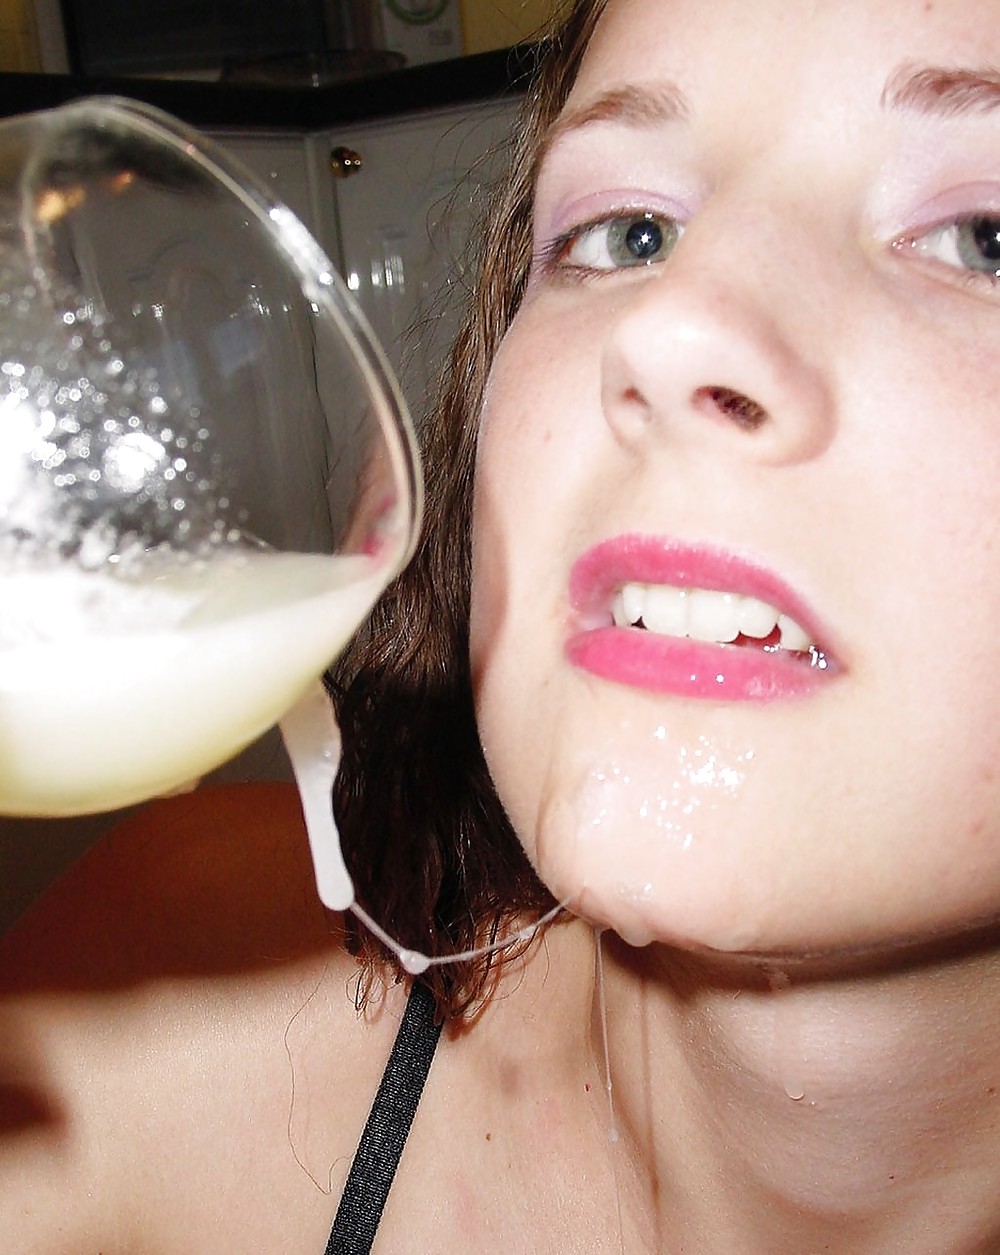 Girls drinking sperm cocktails.